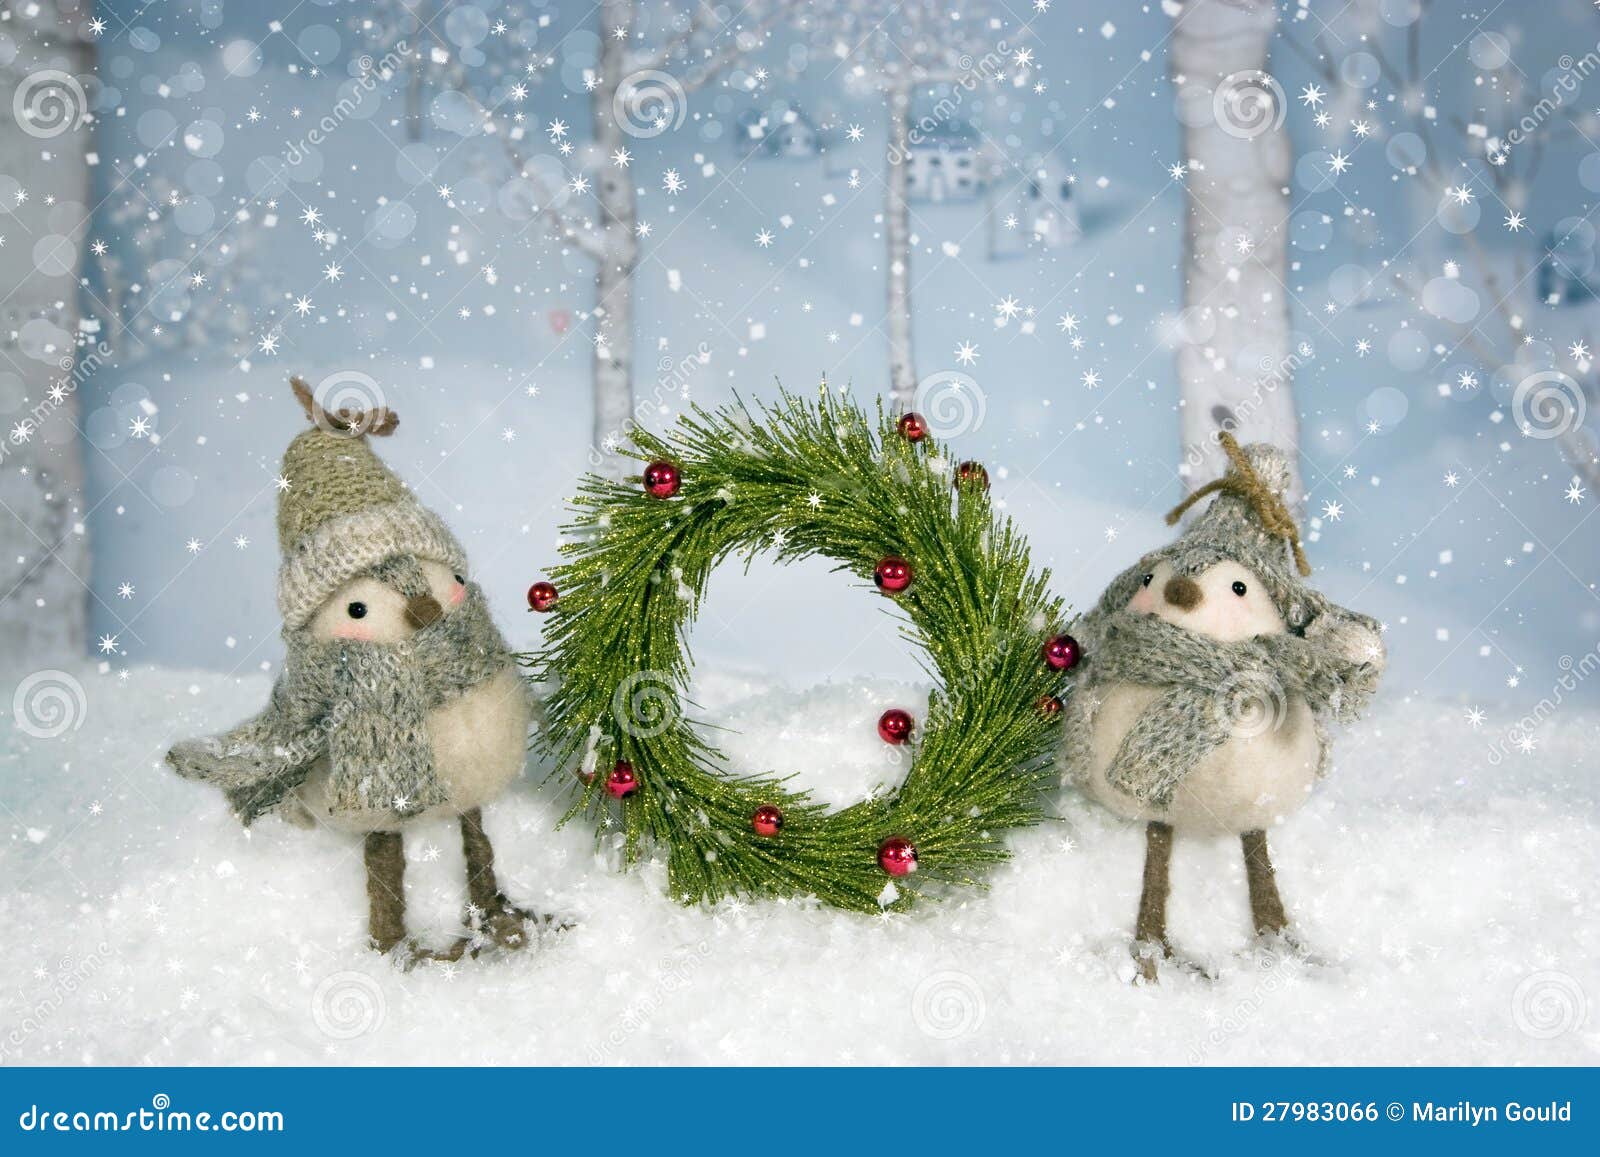 Corona degli uccelli di Natale. Una coppia gli uccelli capricciosi si è vestita in cappelli e le sciarpe che giudicano Natale si avvolgono. alberi e villaggio di betulla nel fondo.